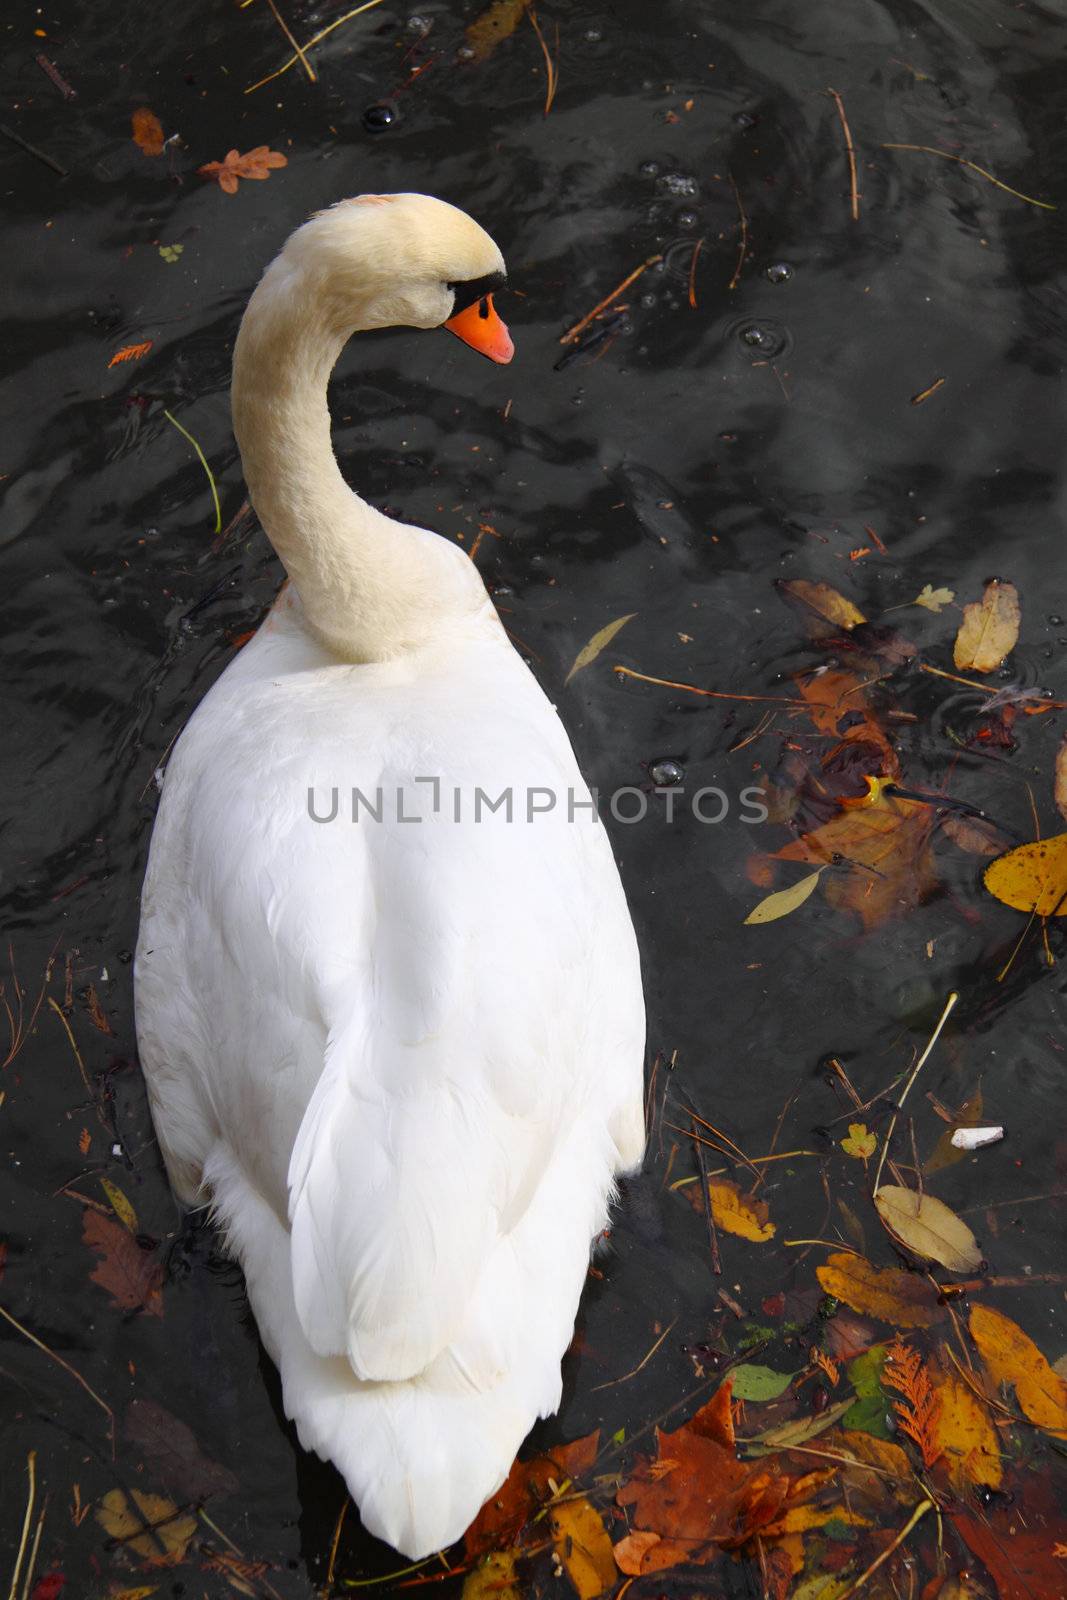 A swan amidst fallen autumn leaves